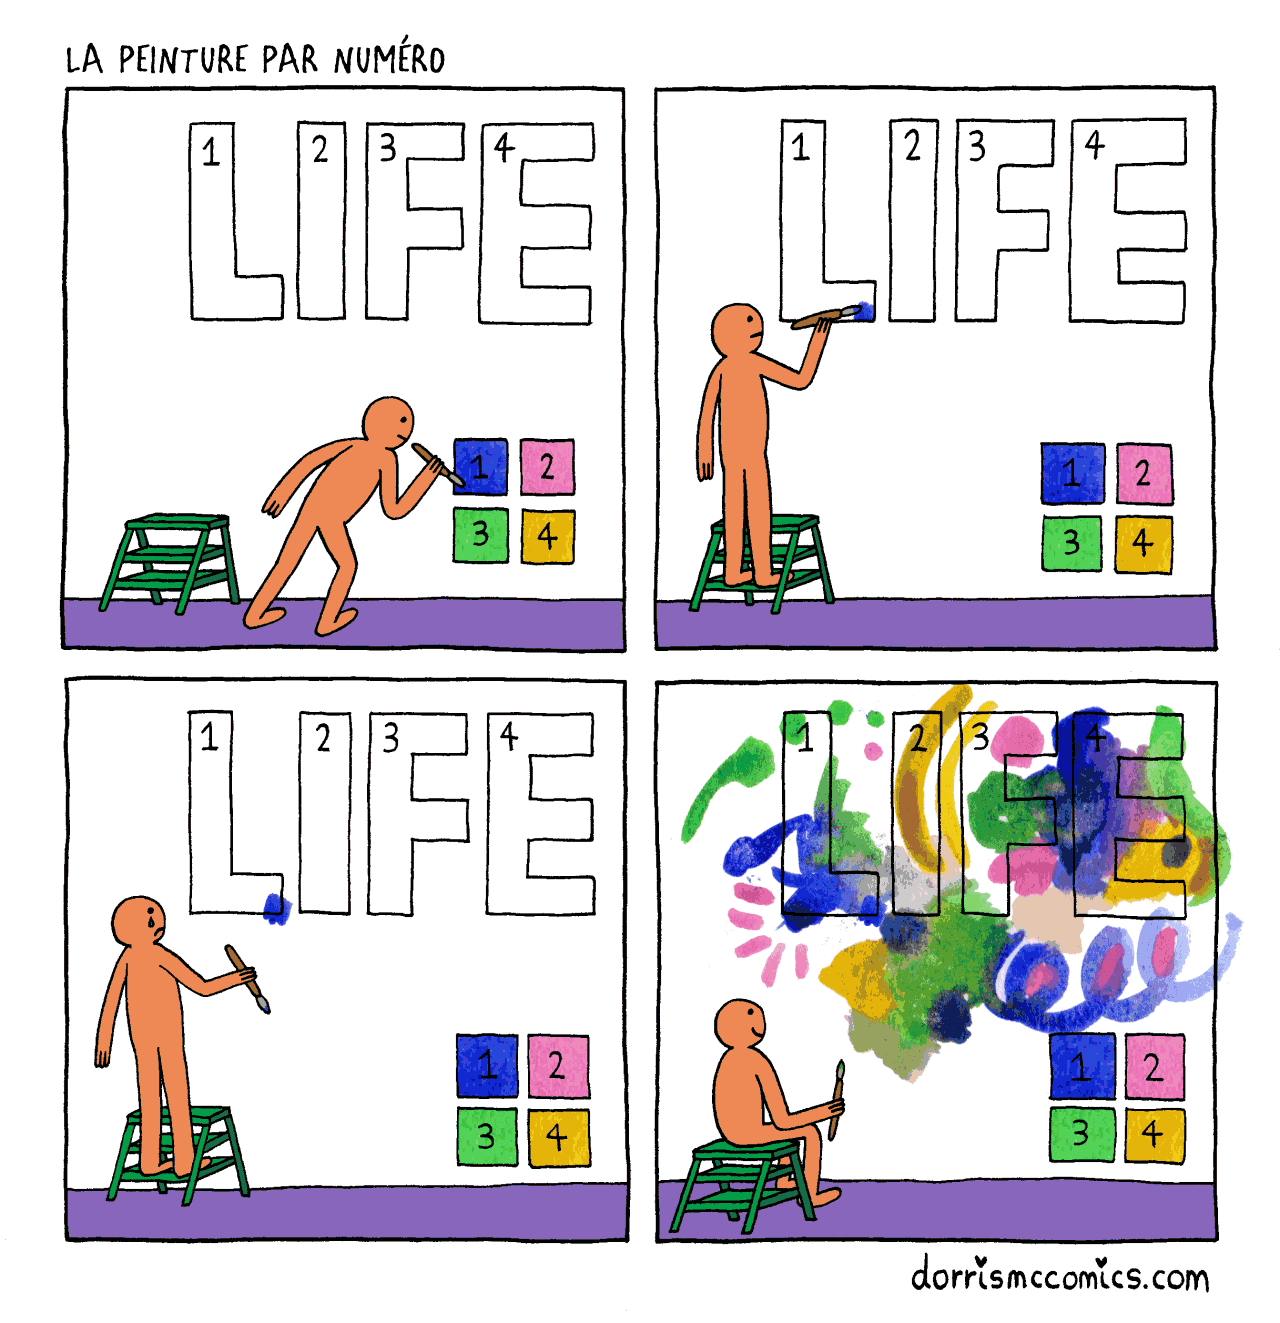 La vie